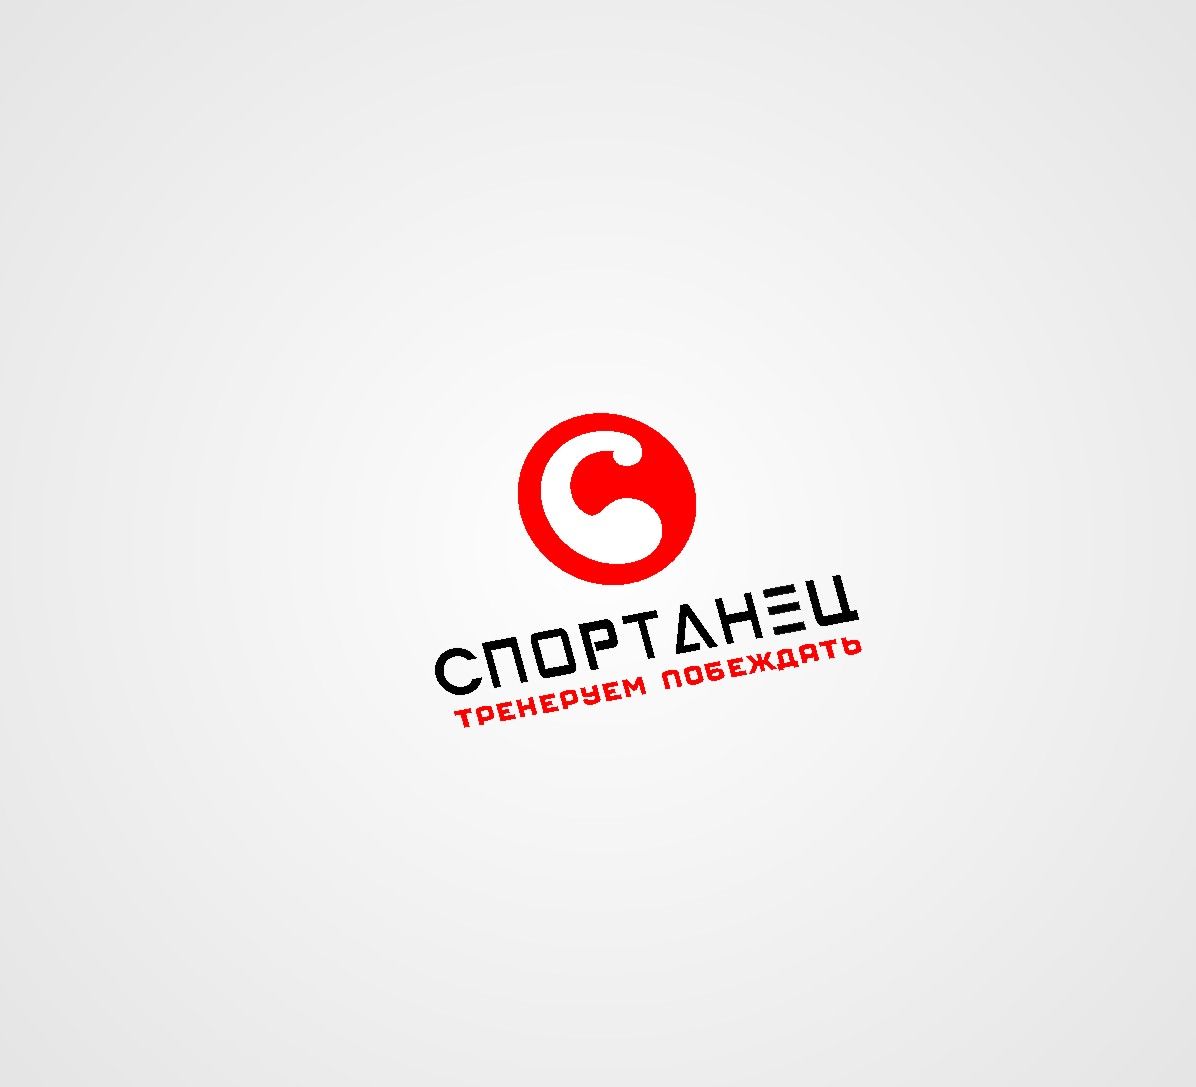 Логотип и название для спортивного зала - дизайнер radchuk-ruslan